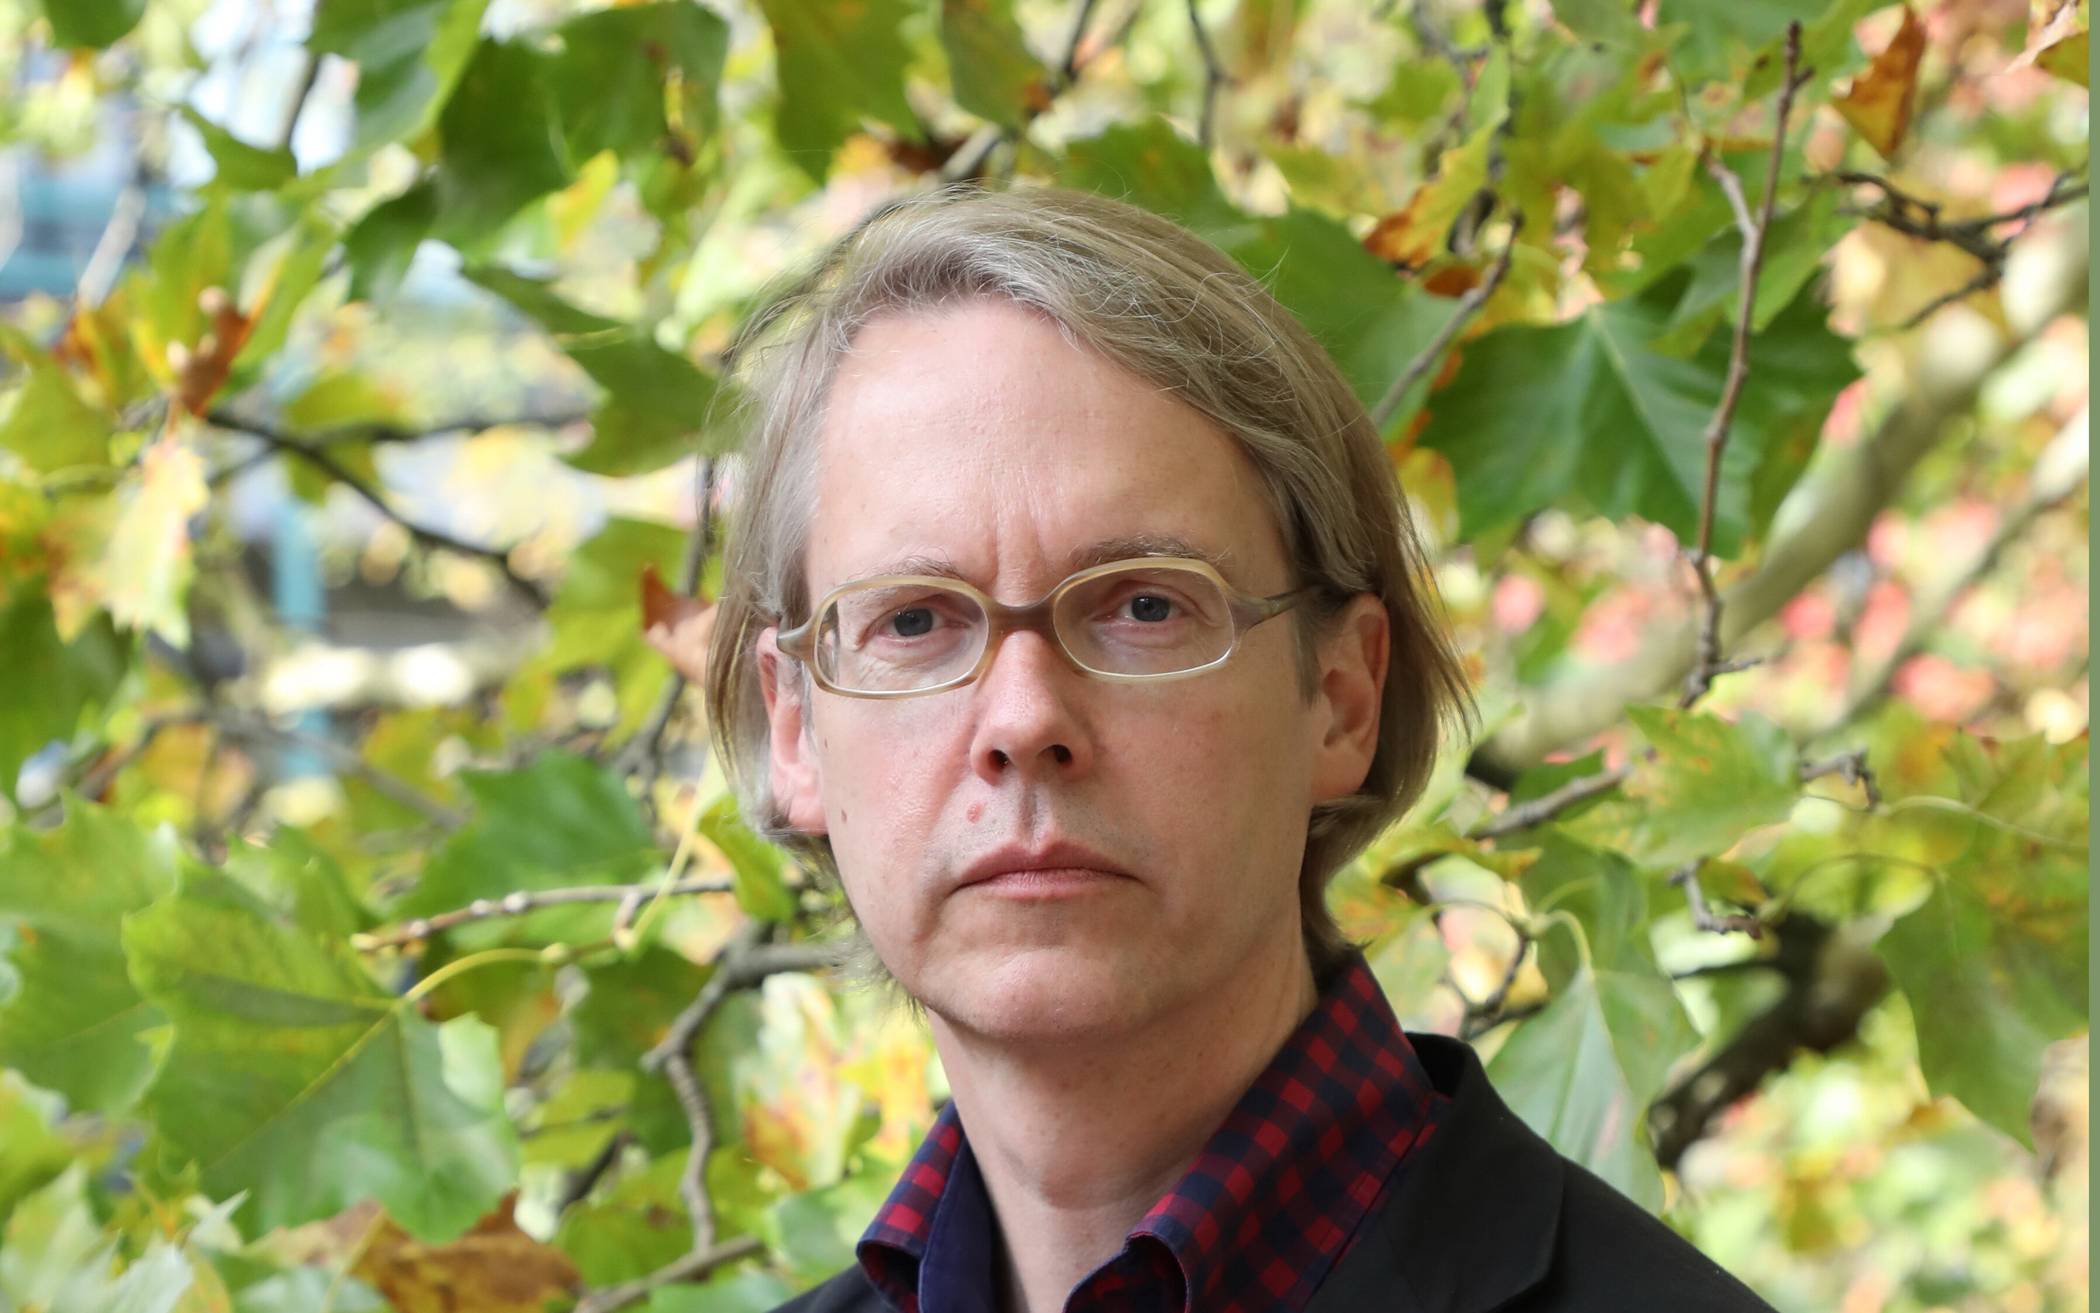  Alf Christophersen lehrt seit 2018 als Professor für Systematische Theologie in der Fakultät für Geistes- und Kulturwissenschaften an der Bergischen Universität. 